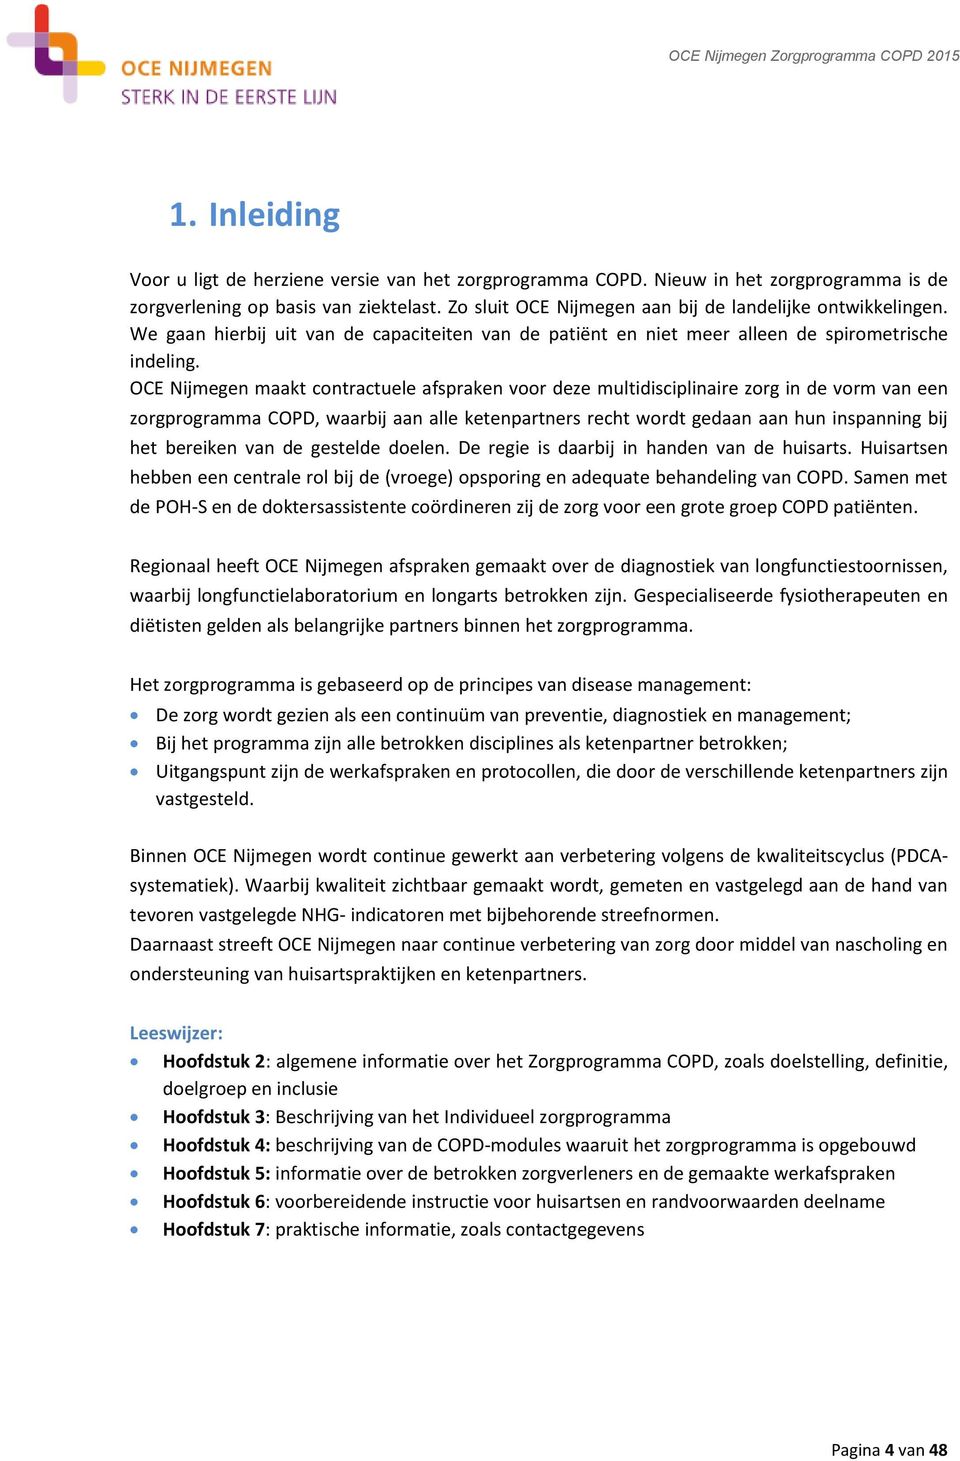 OCE Nijmegen maakt contractuele afspraken voor deze multidisciplinaire zorg in de vorm van een zorgprogramma COPD, waarbij aan alle ketenpartners recht wordt gedaan aan hun inspanning bij het